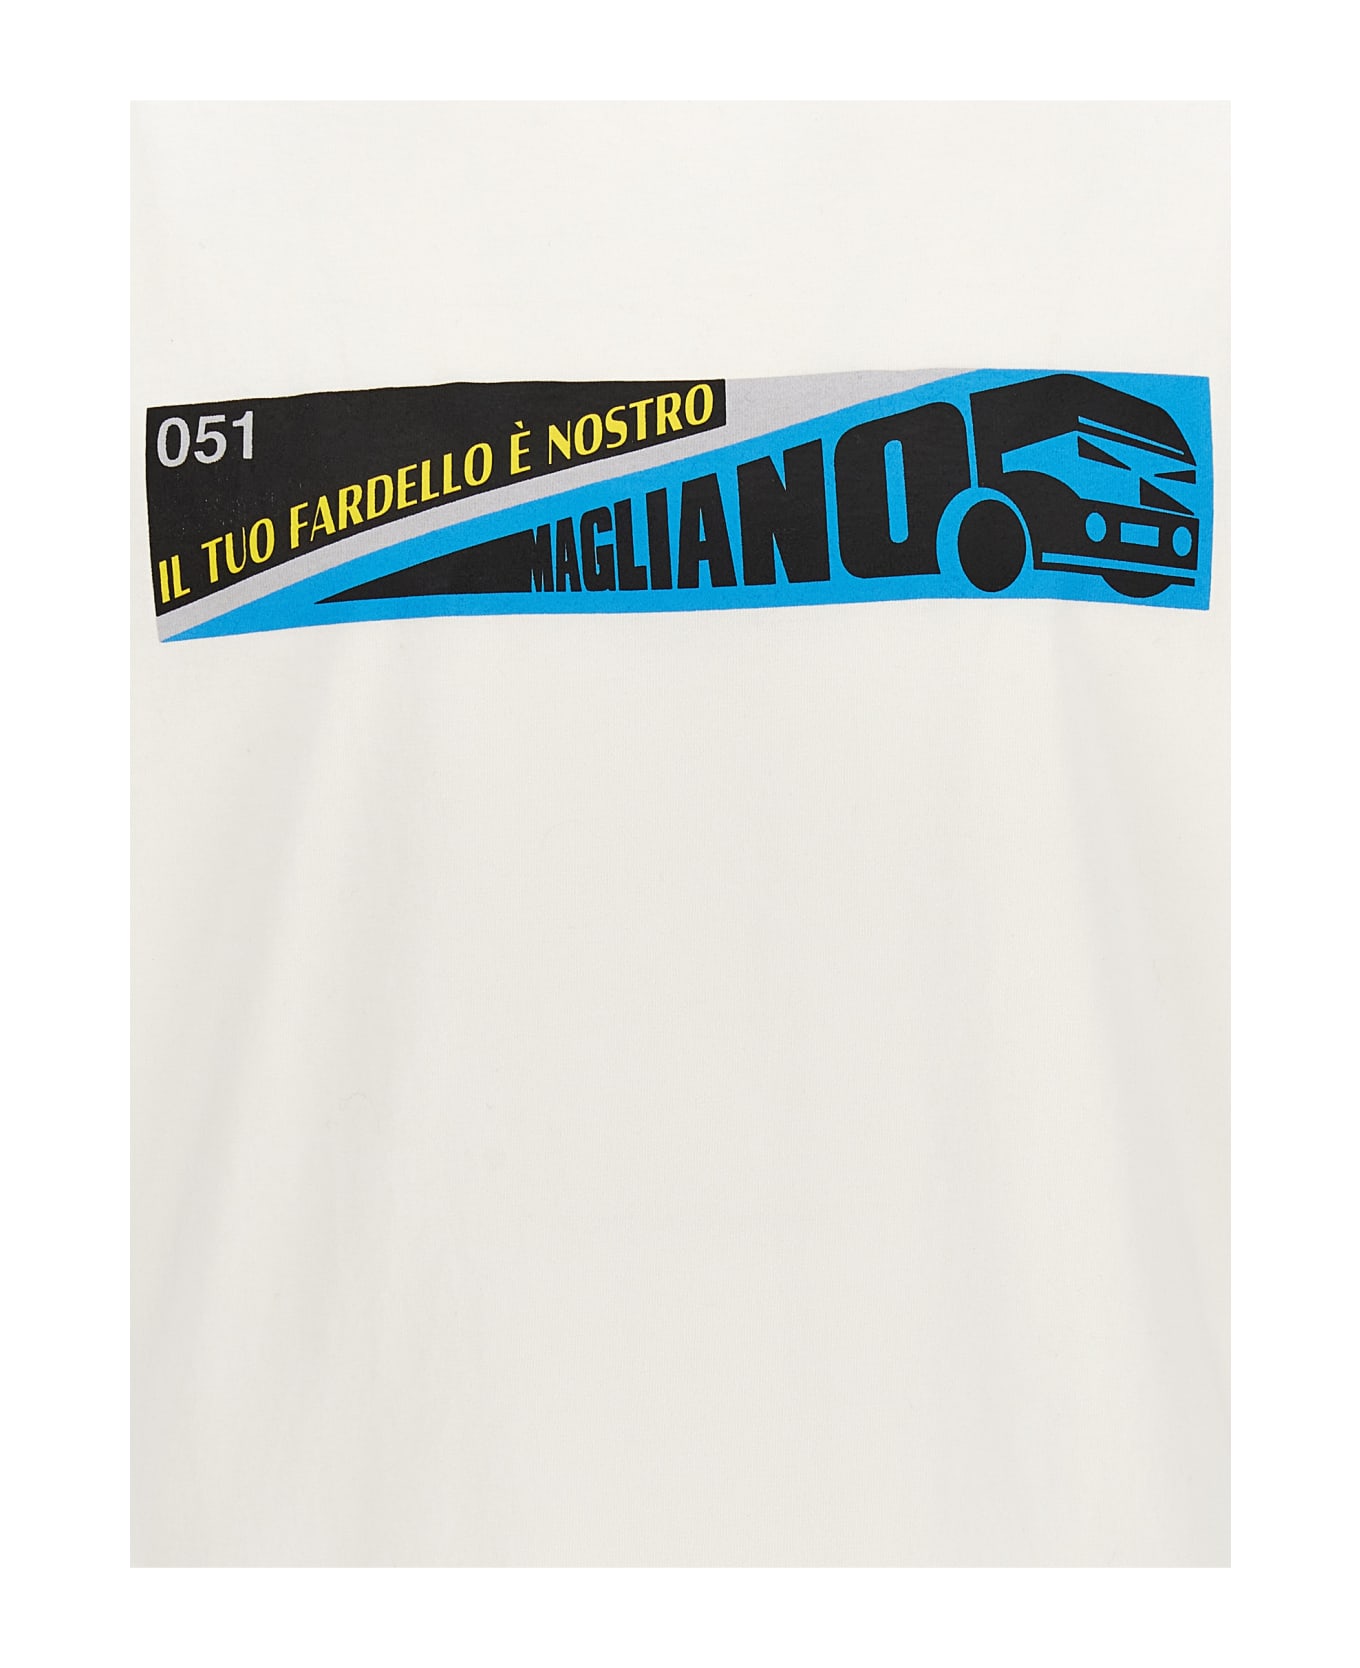 Magliano 'fardello' T-shirt - Bianco